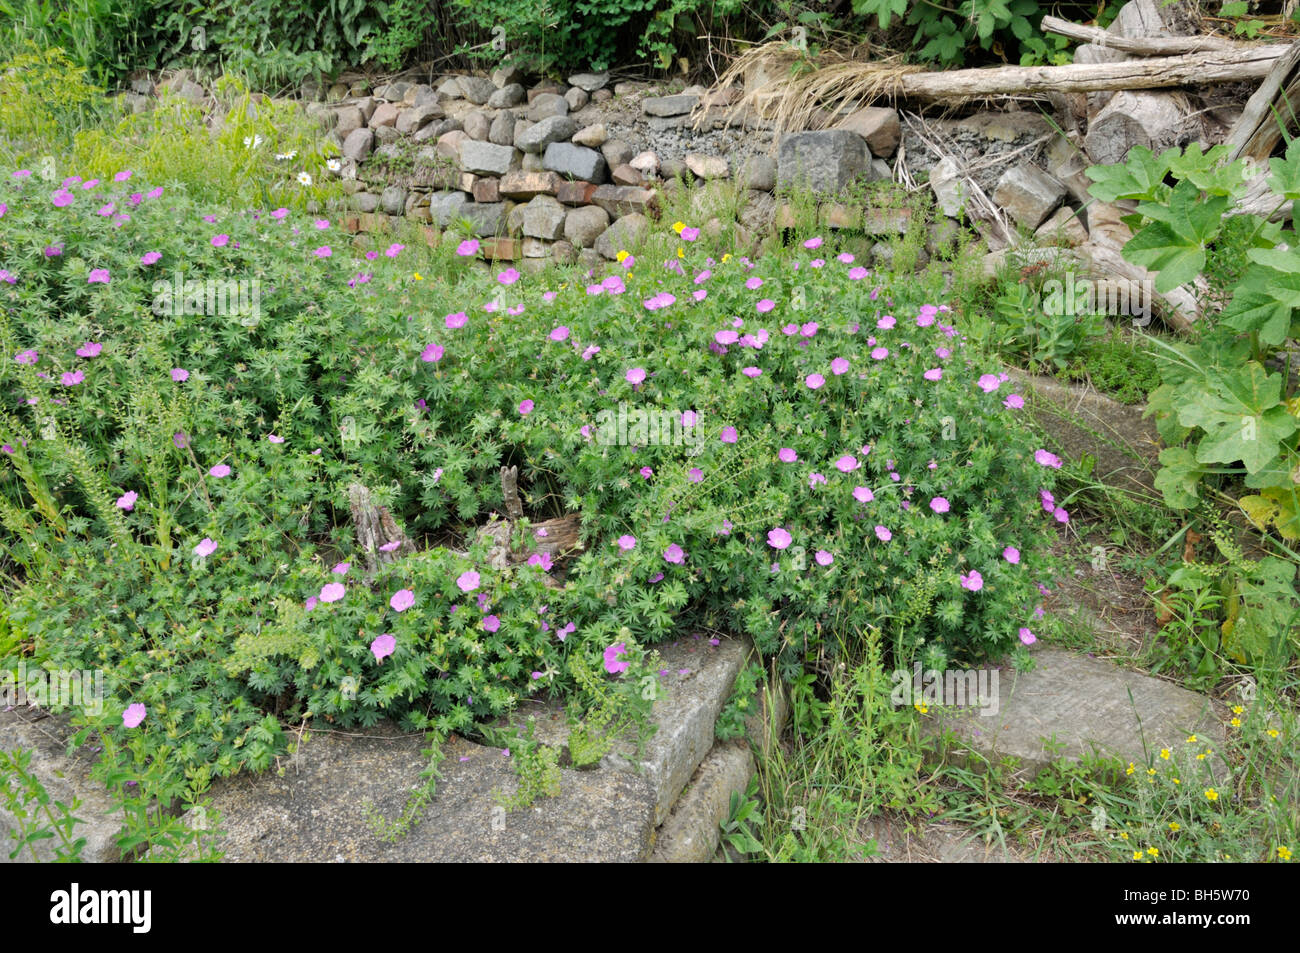 Jardin de plantes vivaces avec mur en pierre sèche Banque D'Images